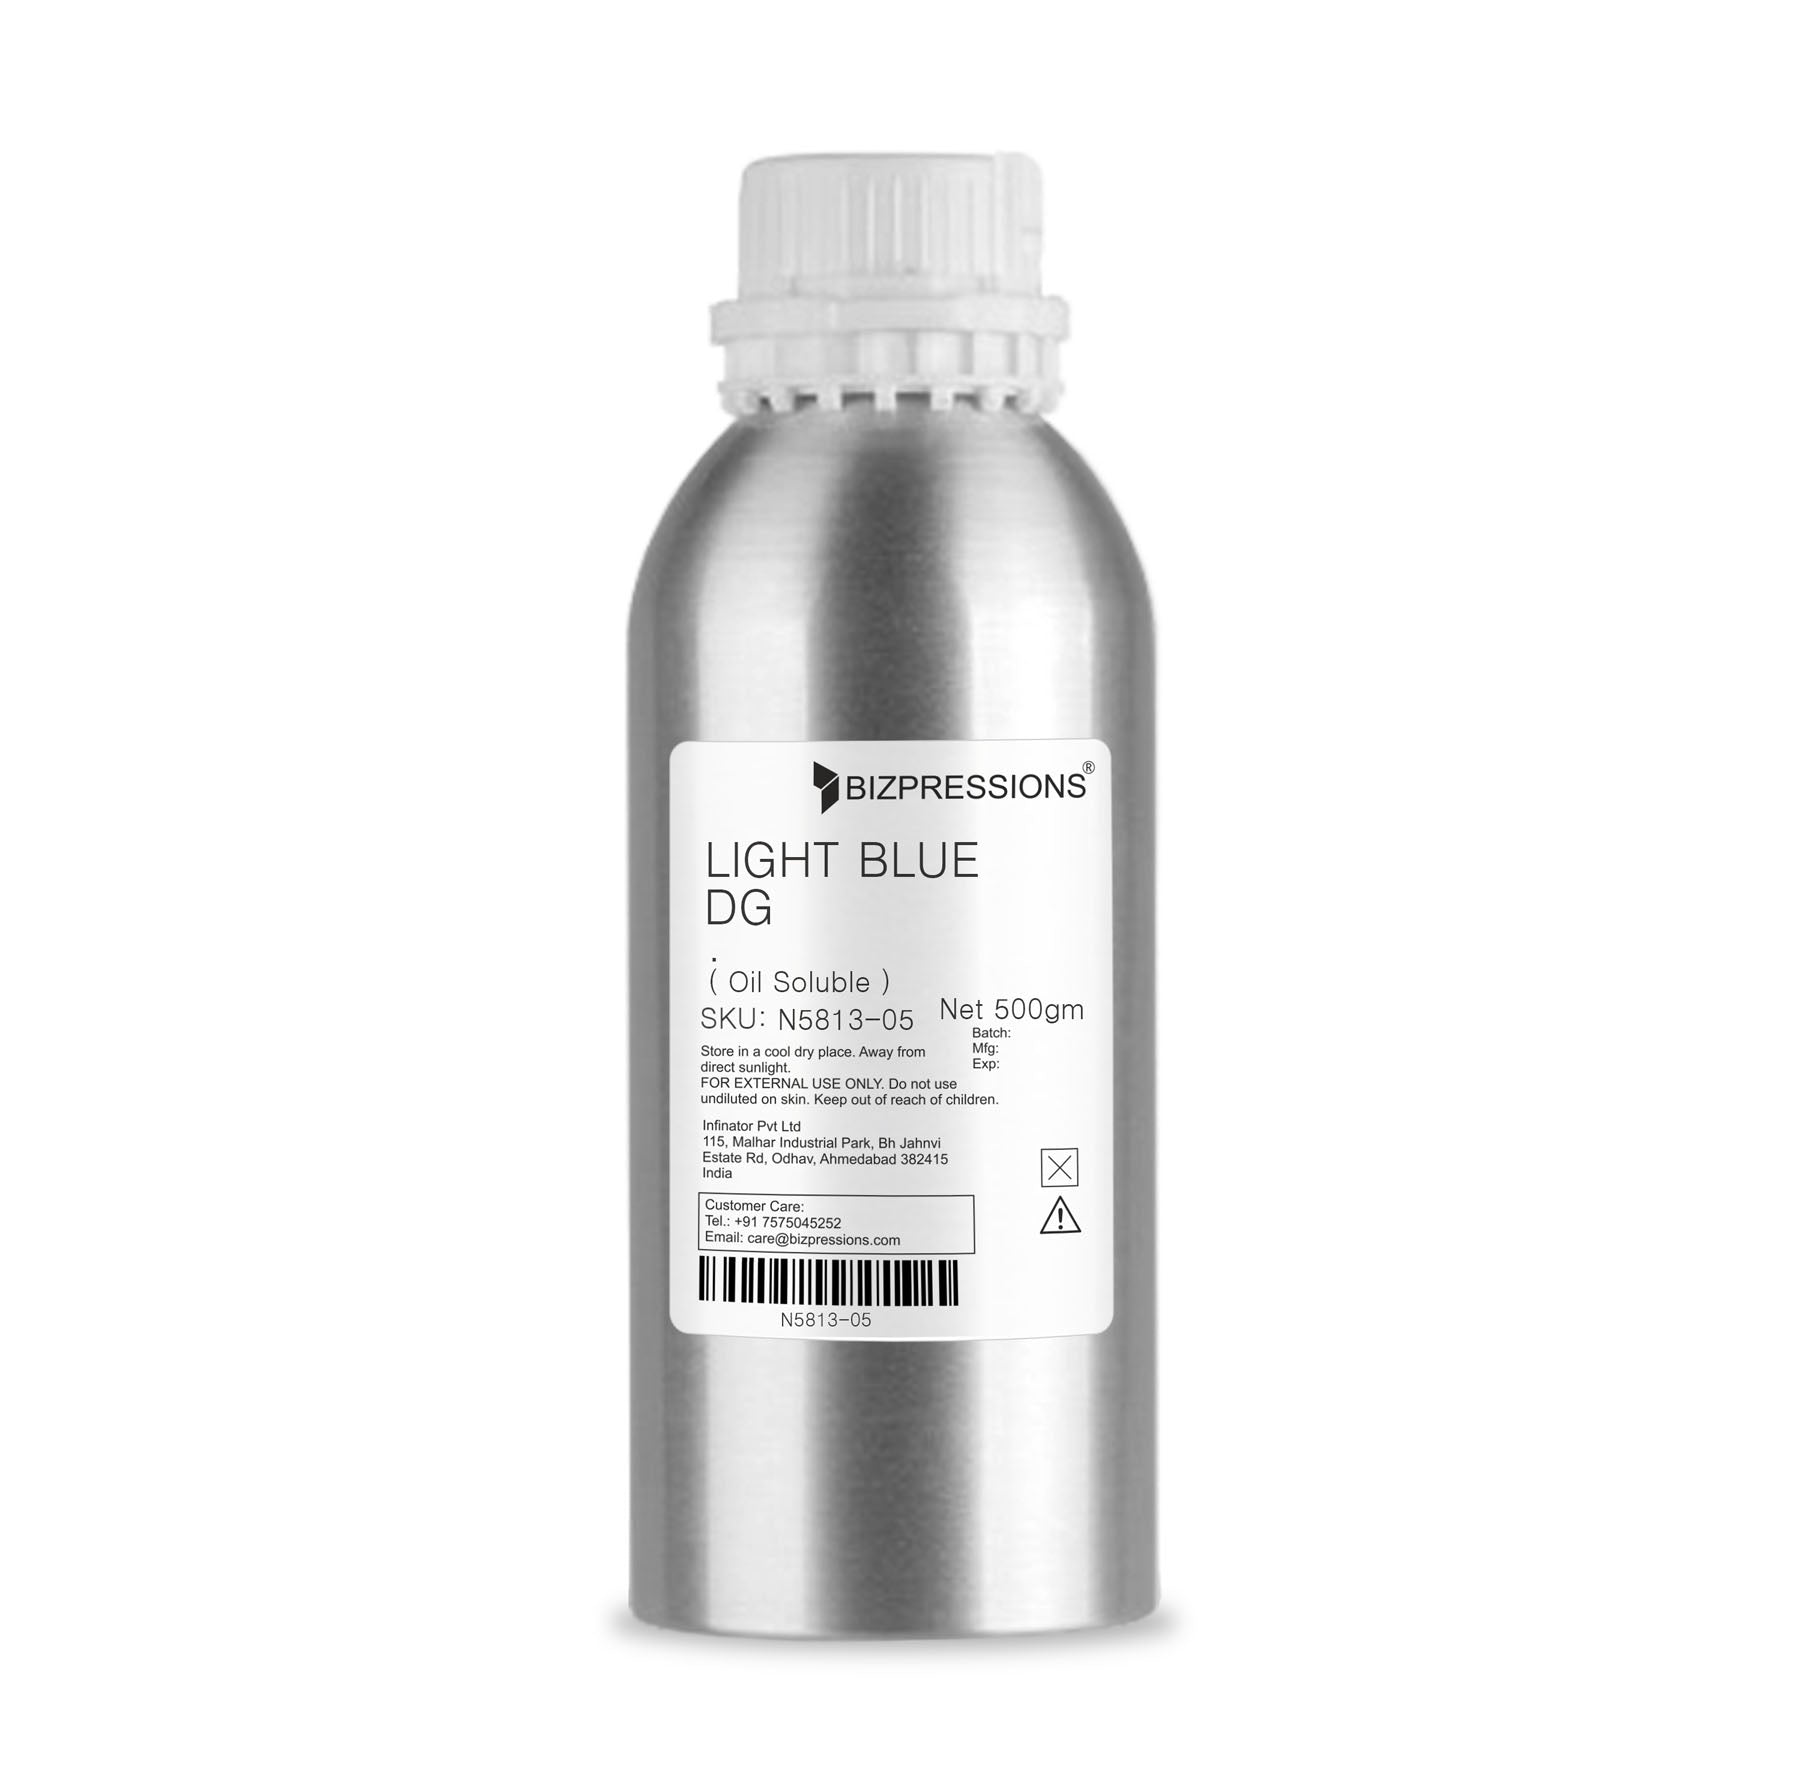 LIGHT BLUE DG - Fragrance ( Oil Soluble ) - 500 gm